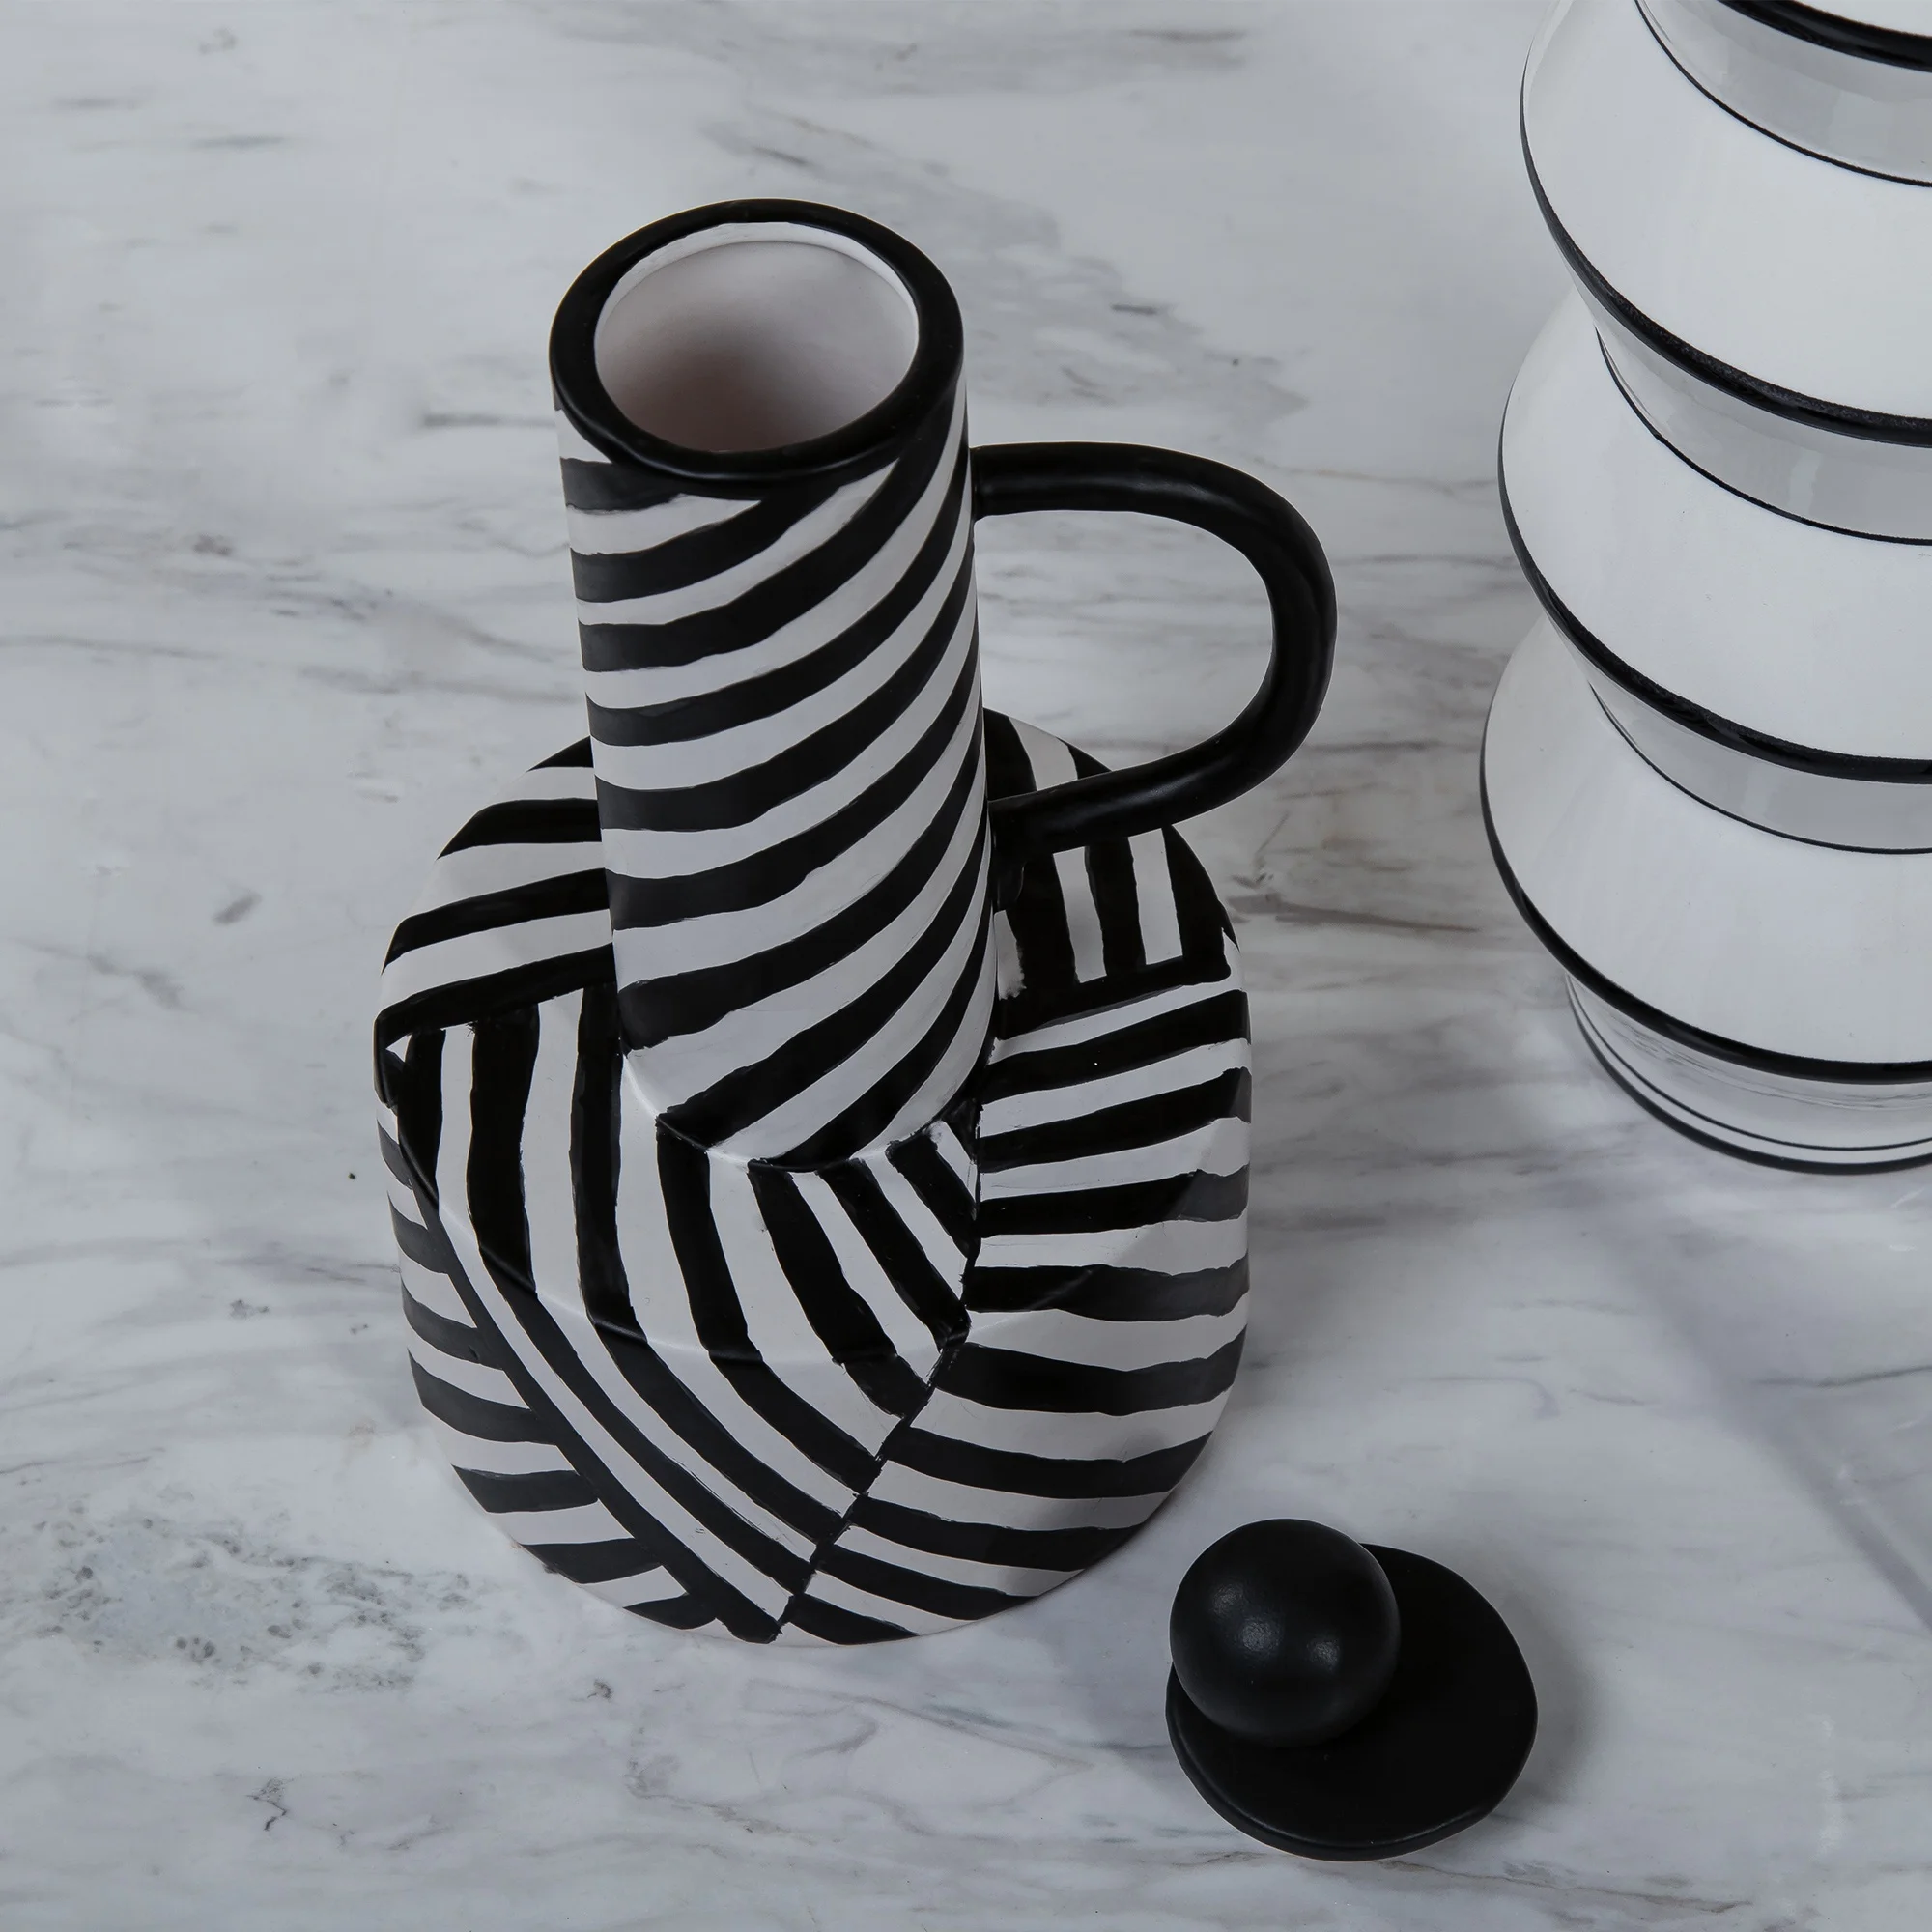 
Simple stripe black white ceramic sculpture interior decorative 